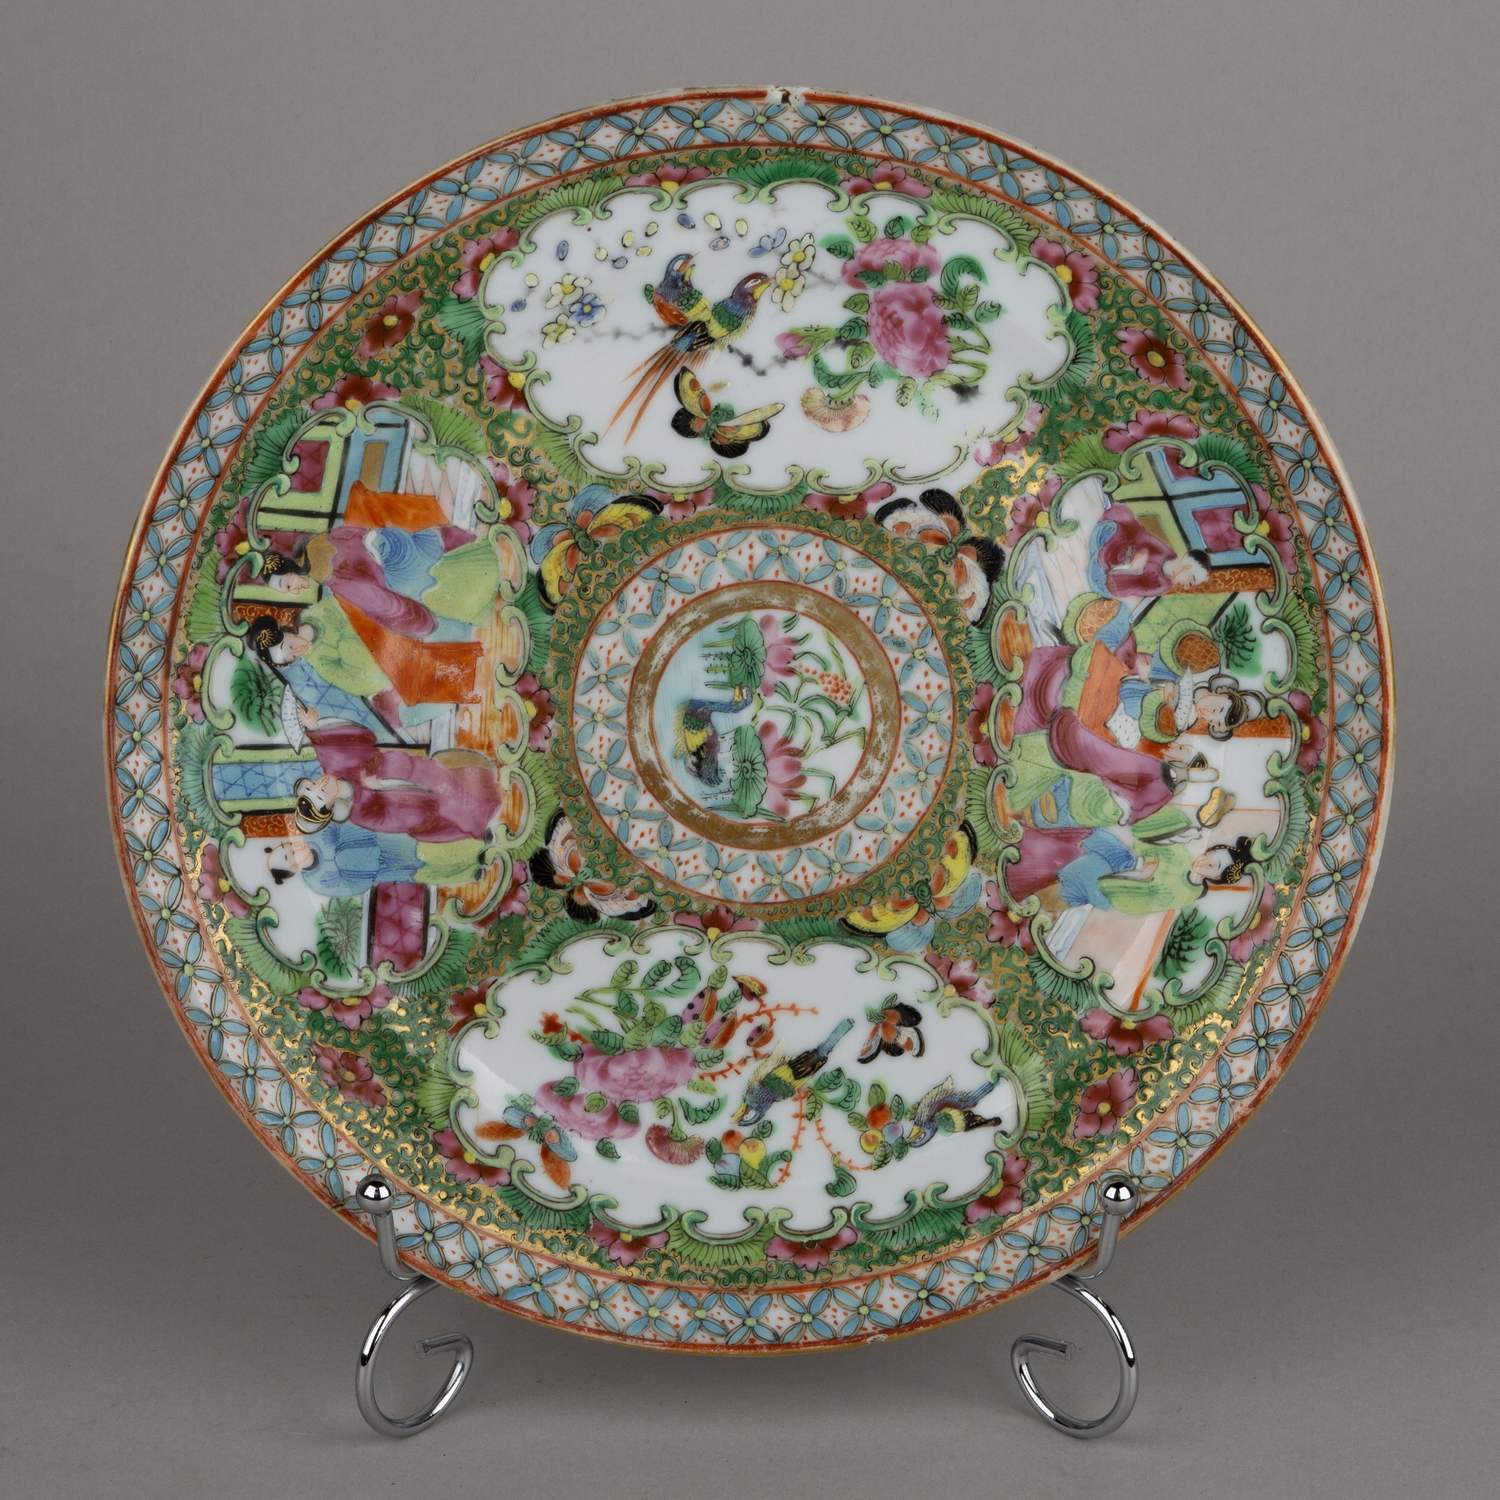 (Китай, XVIII век) Тарелка с изображением птиц, бабочек, цветов и  жанровых сцен. Китай, XVIII век.